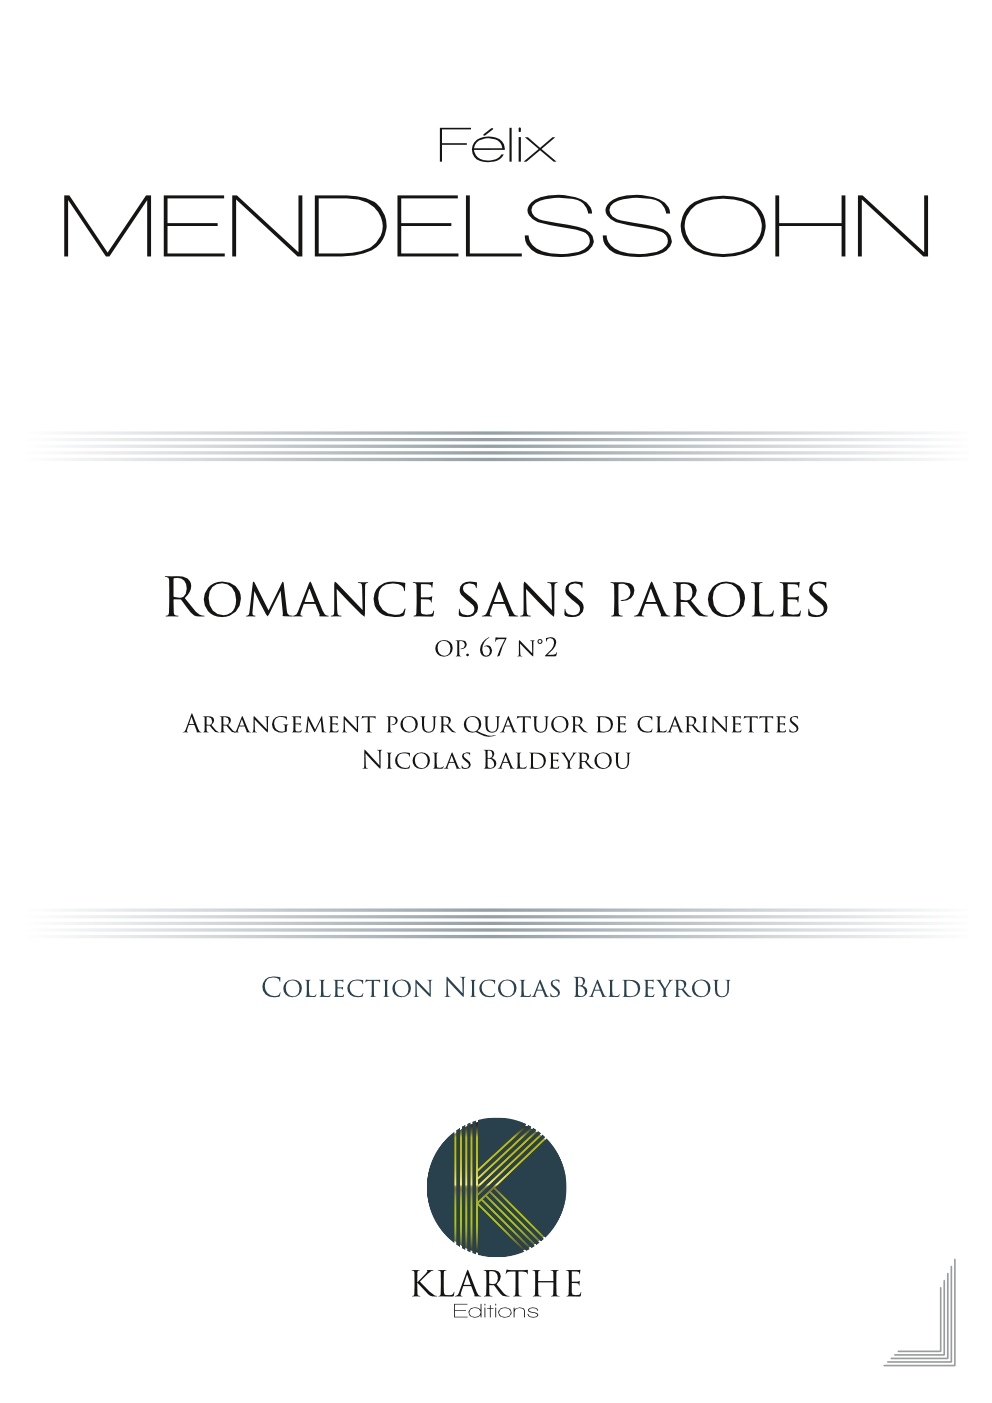 Romance sans paroles opus 67, n°4 (MENDELSSOHN-BARTHOLDY FELIX)